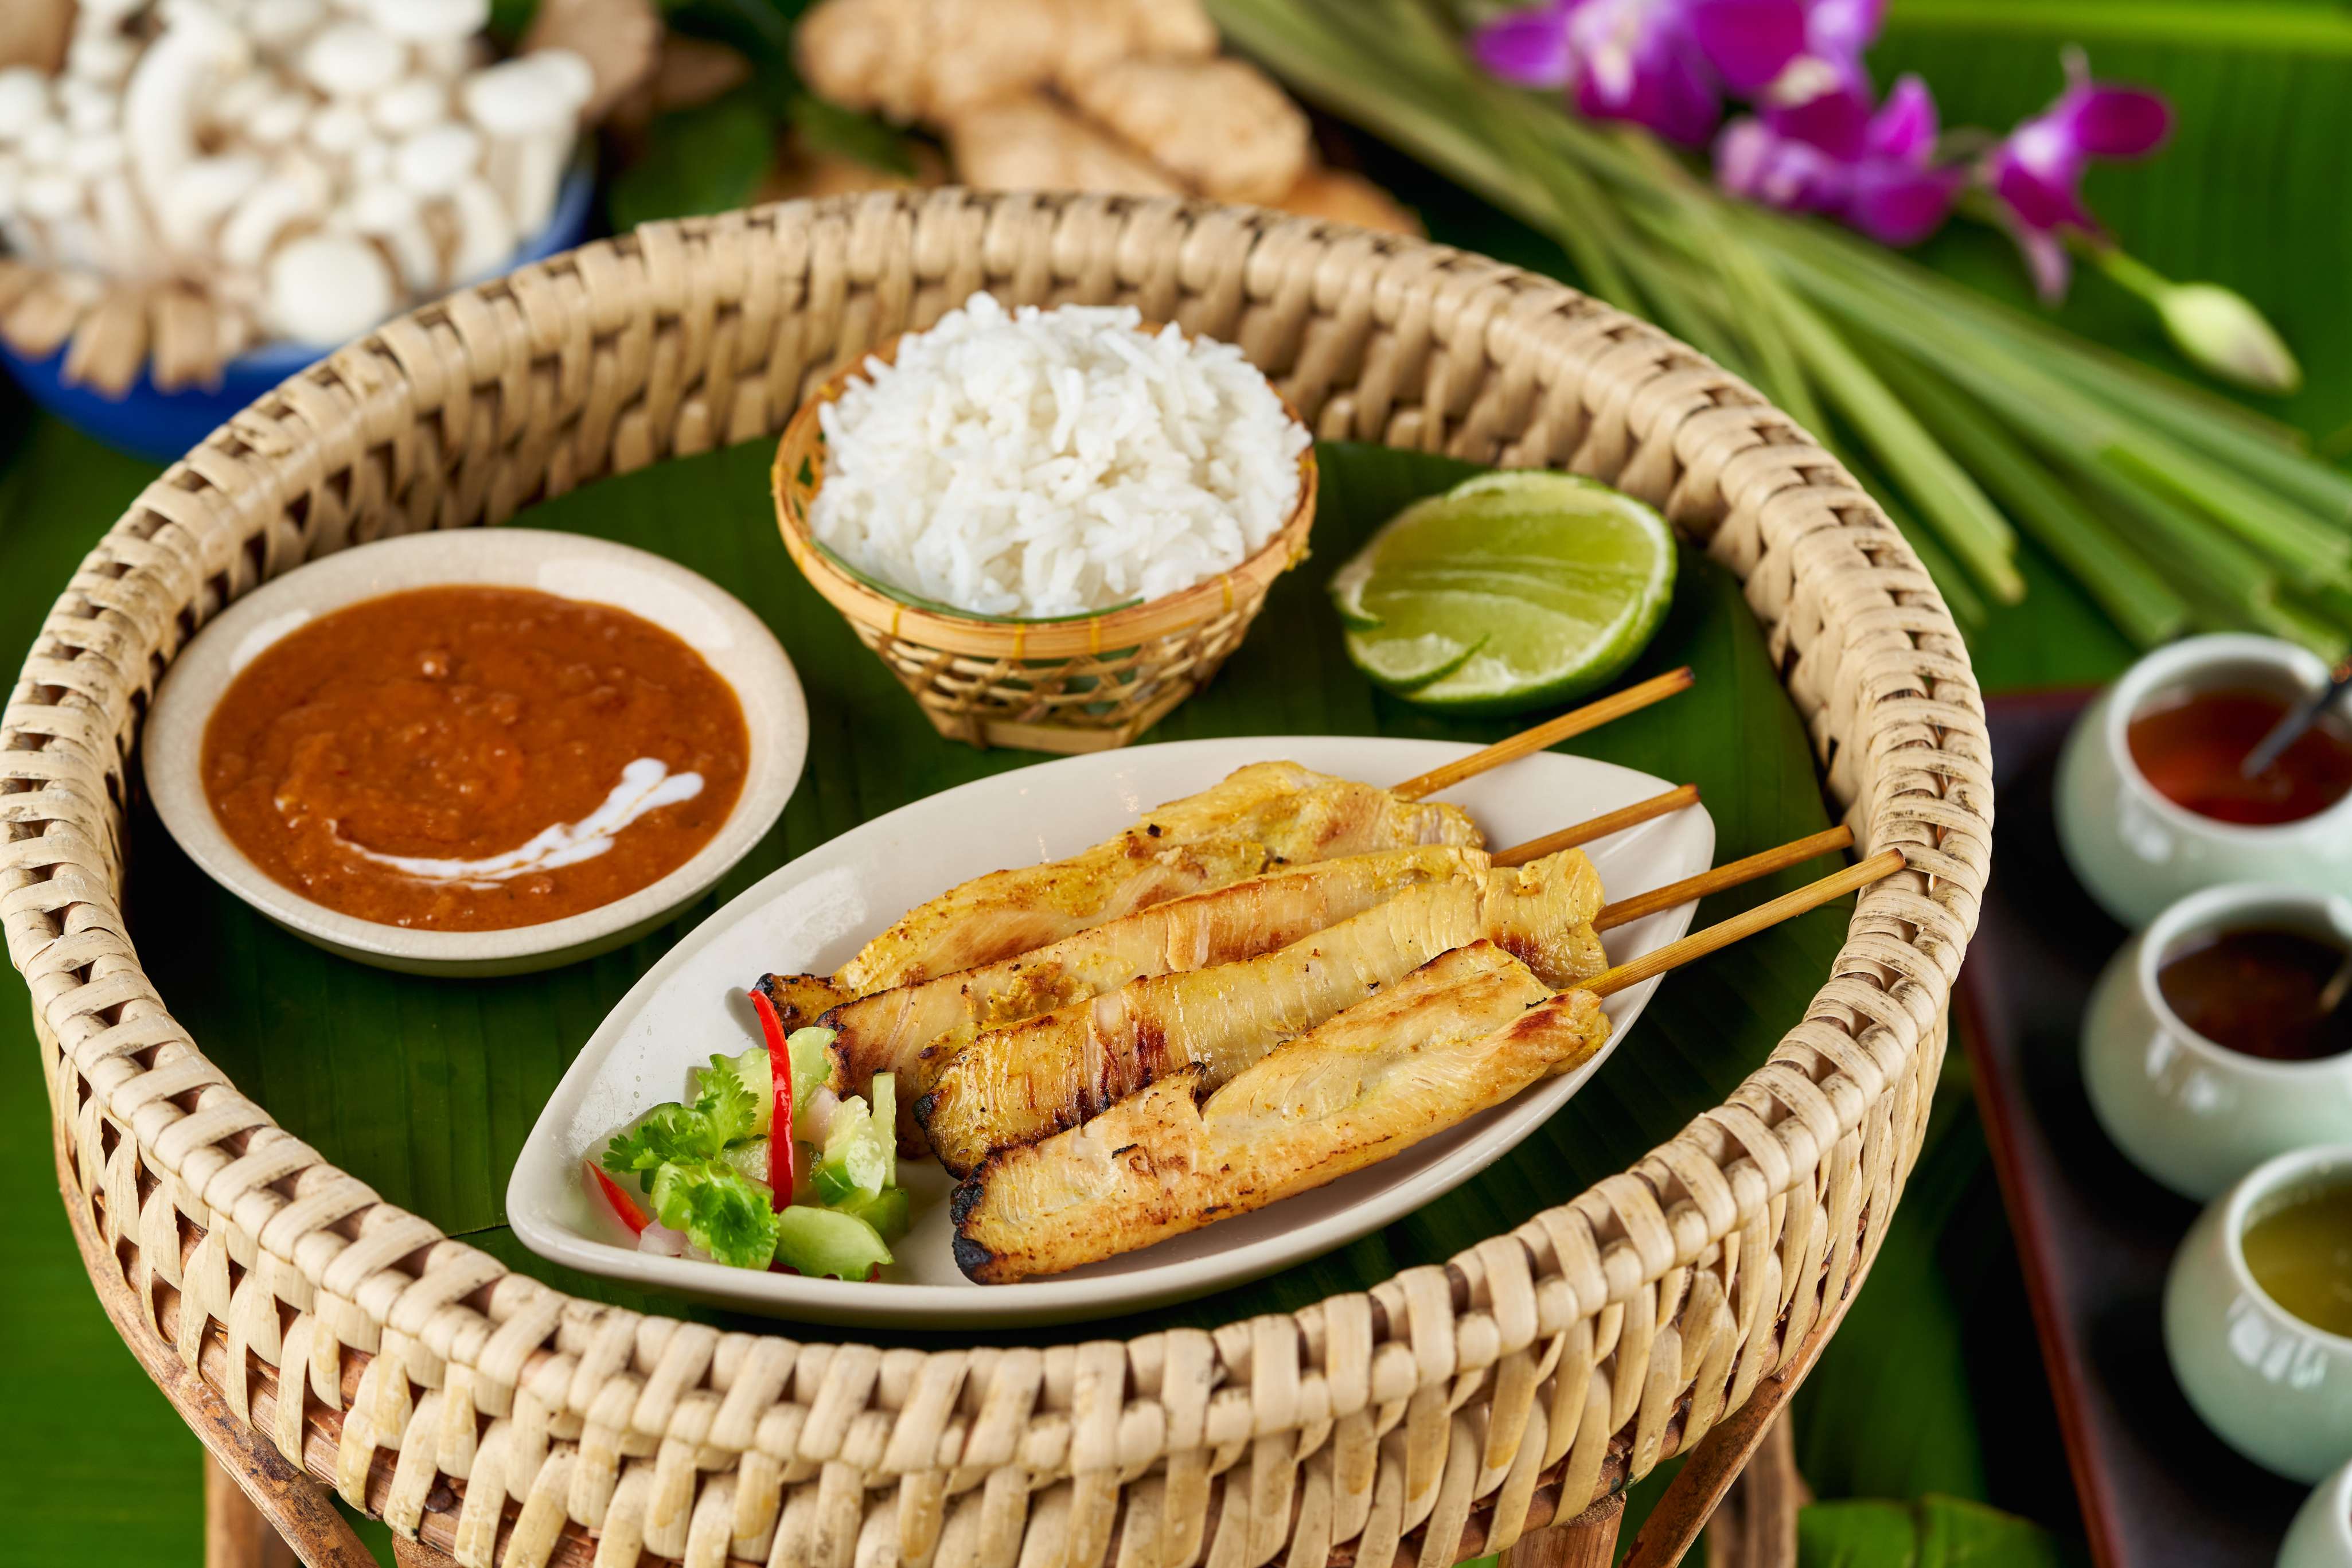 thai cuisine and culture in dubai